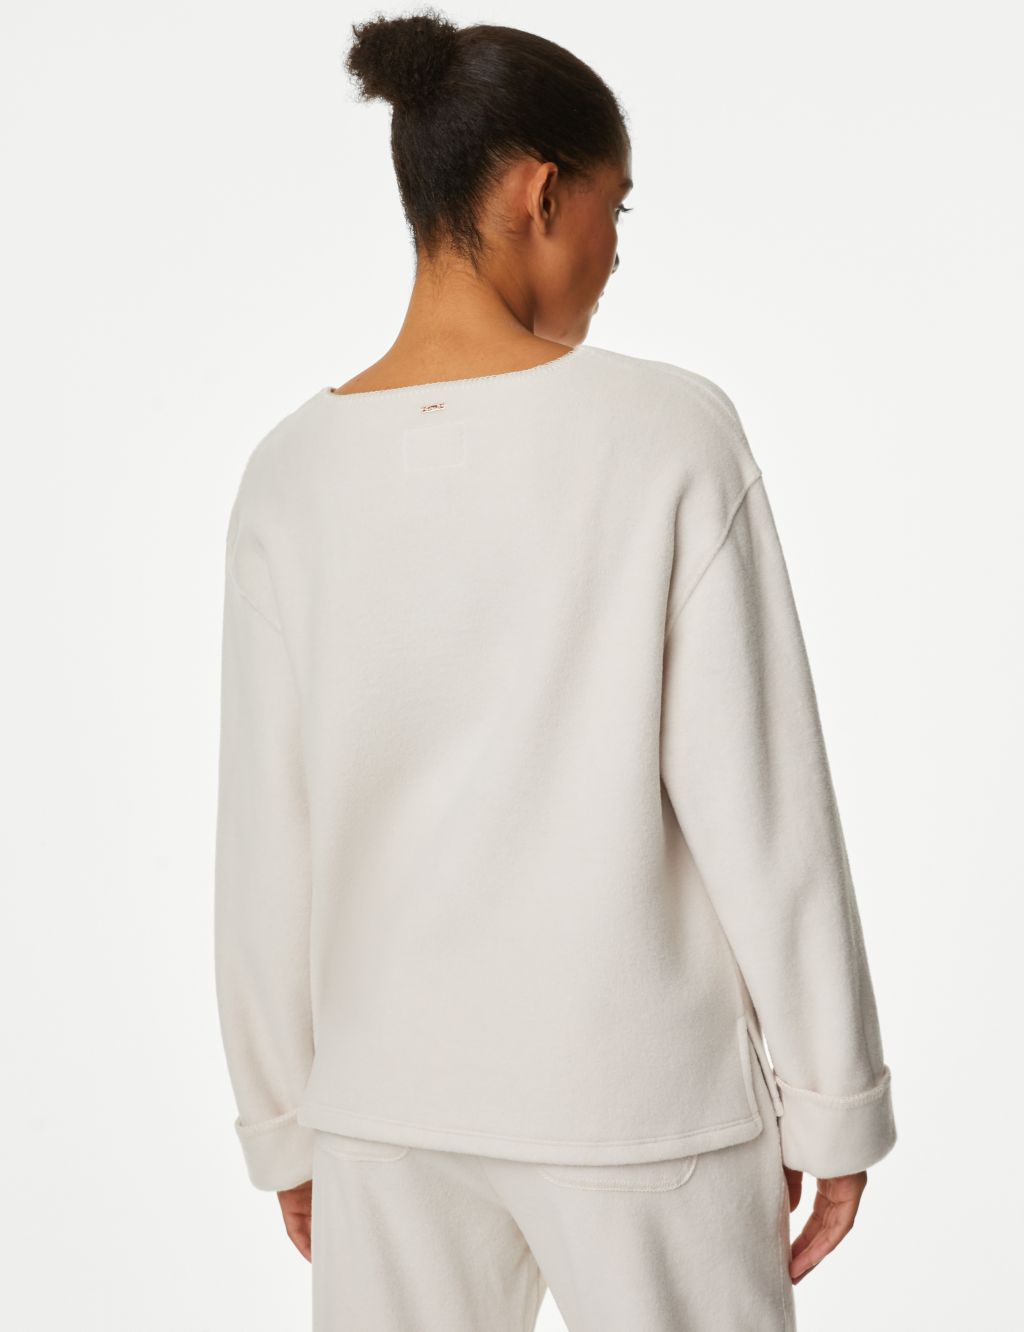 Fleece Lounge Sweatshirt image 5